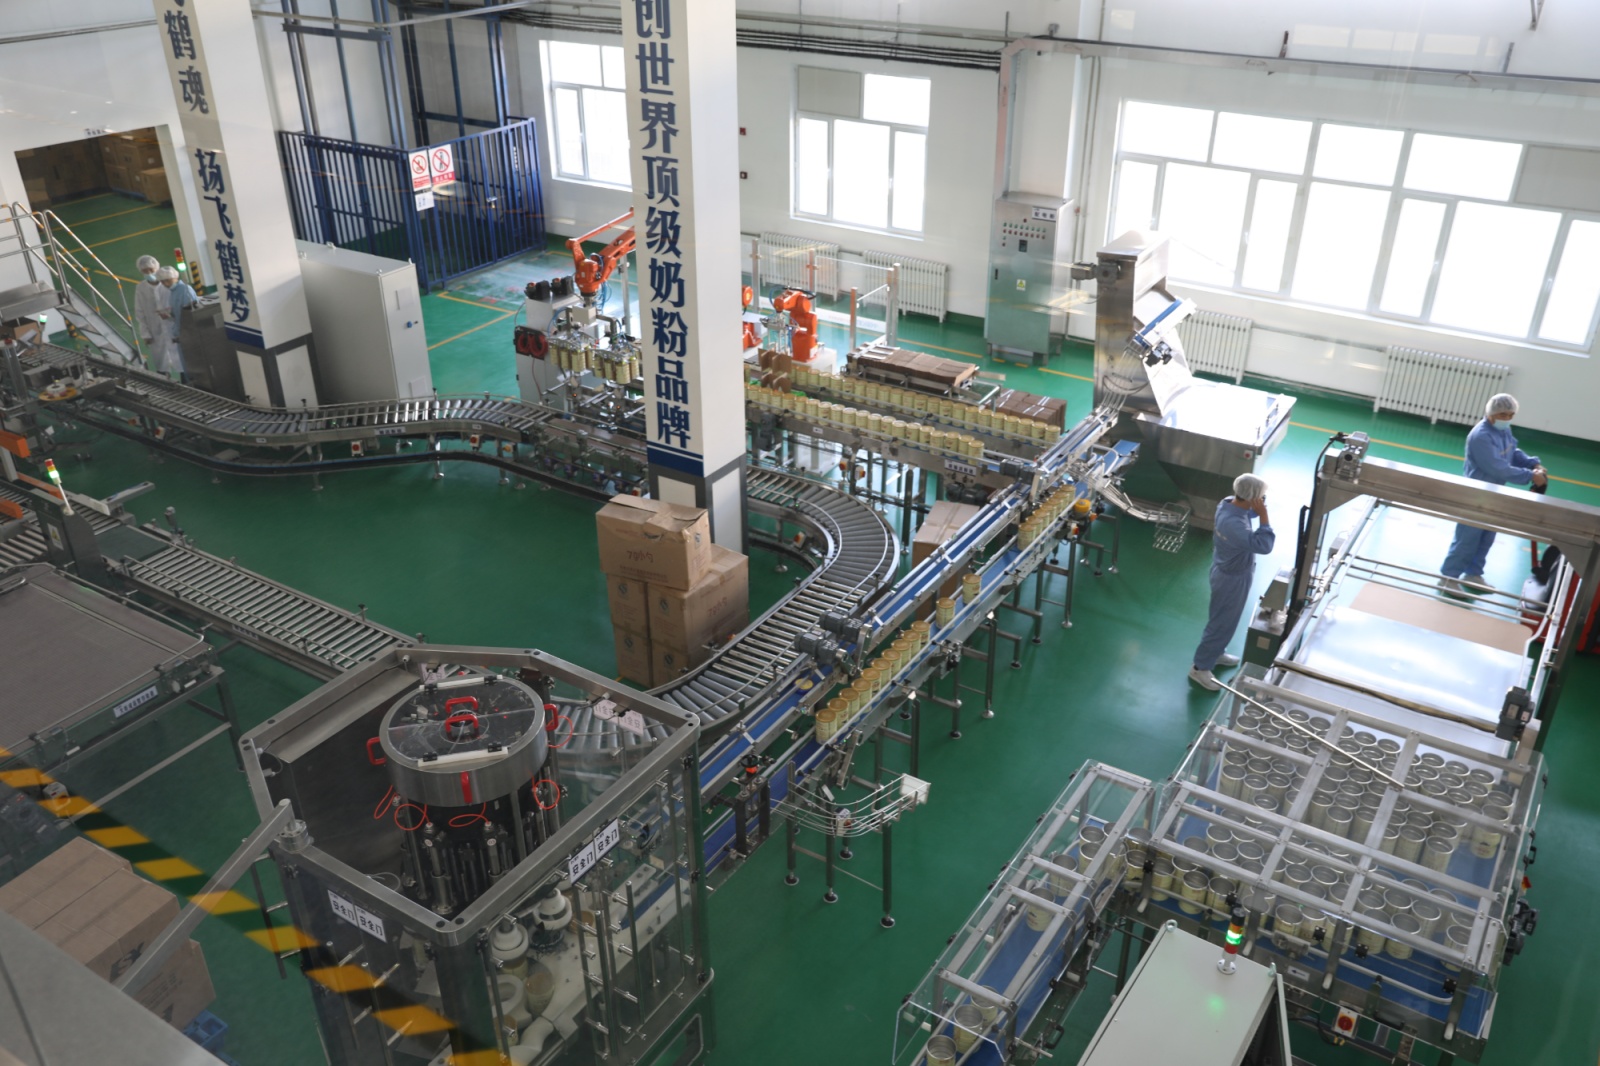 拜泉县尚禾谷营养食品有限公司升级改造后的奶粉生产线